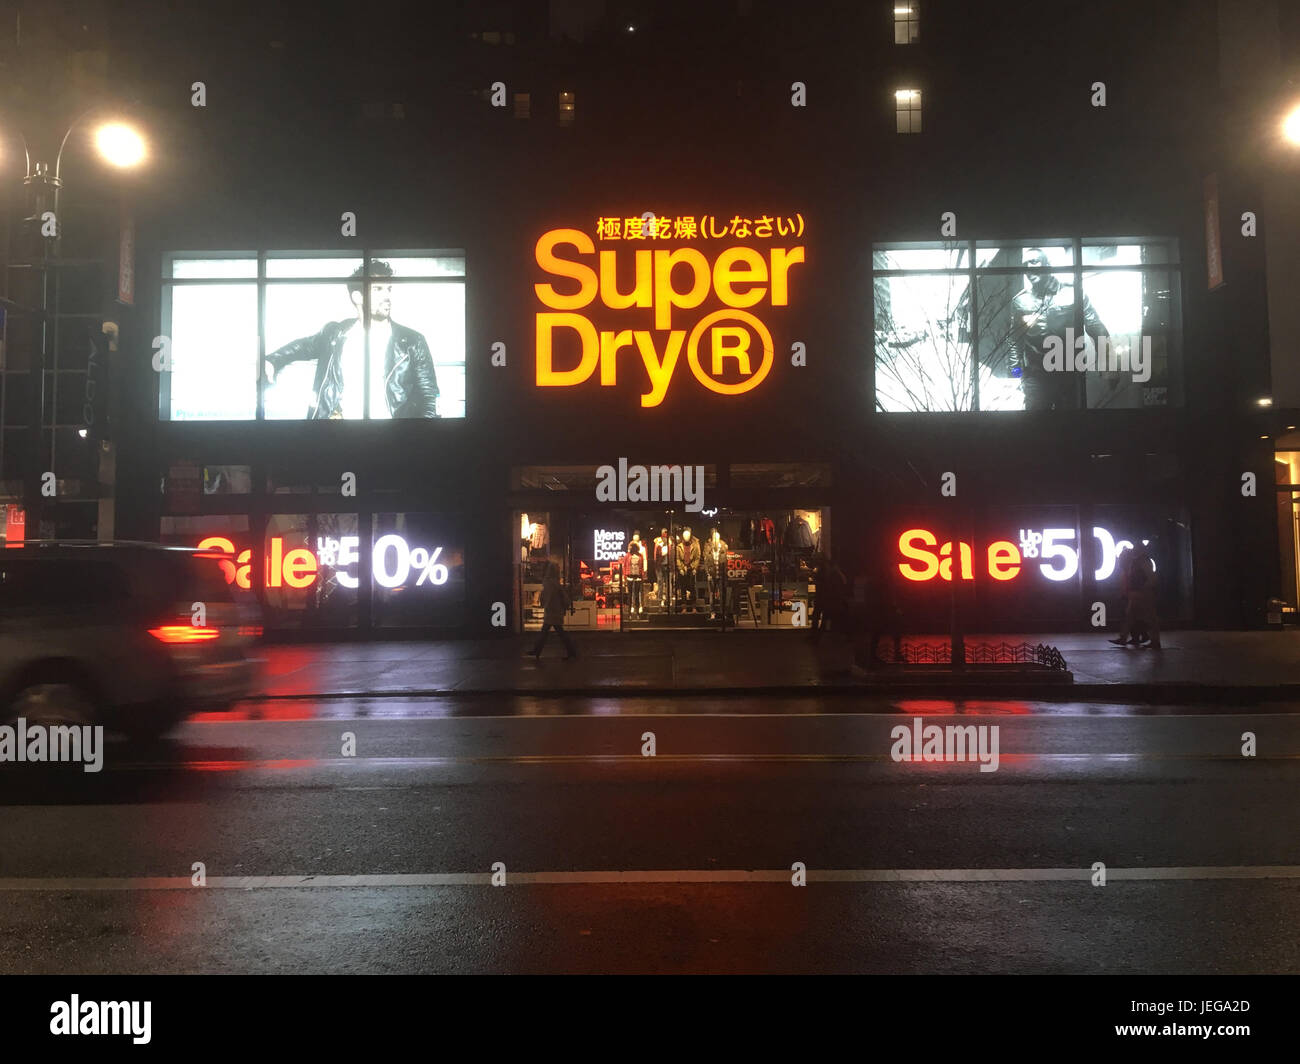 New York City - 20 gennaio 2017: Superdry, rivenditore di abbigliamento giapponese, a Midtown New York di notte dopo la pioggia. Luci di posizione posteriori per auto dei veicoli che passano. Foto Stock